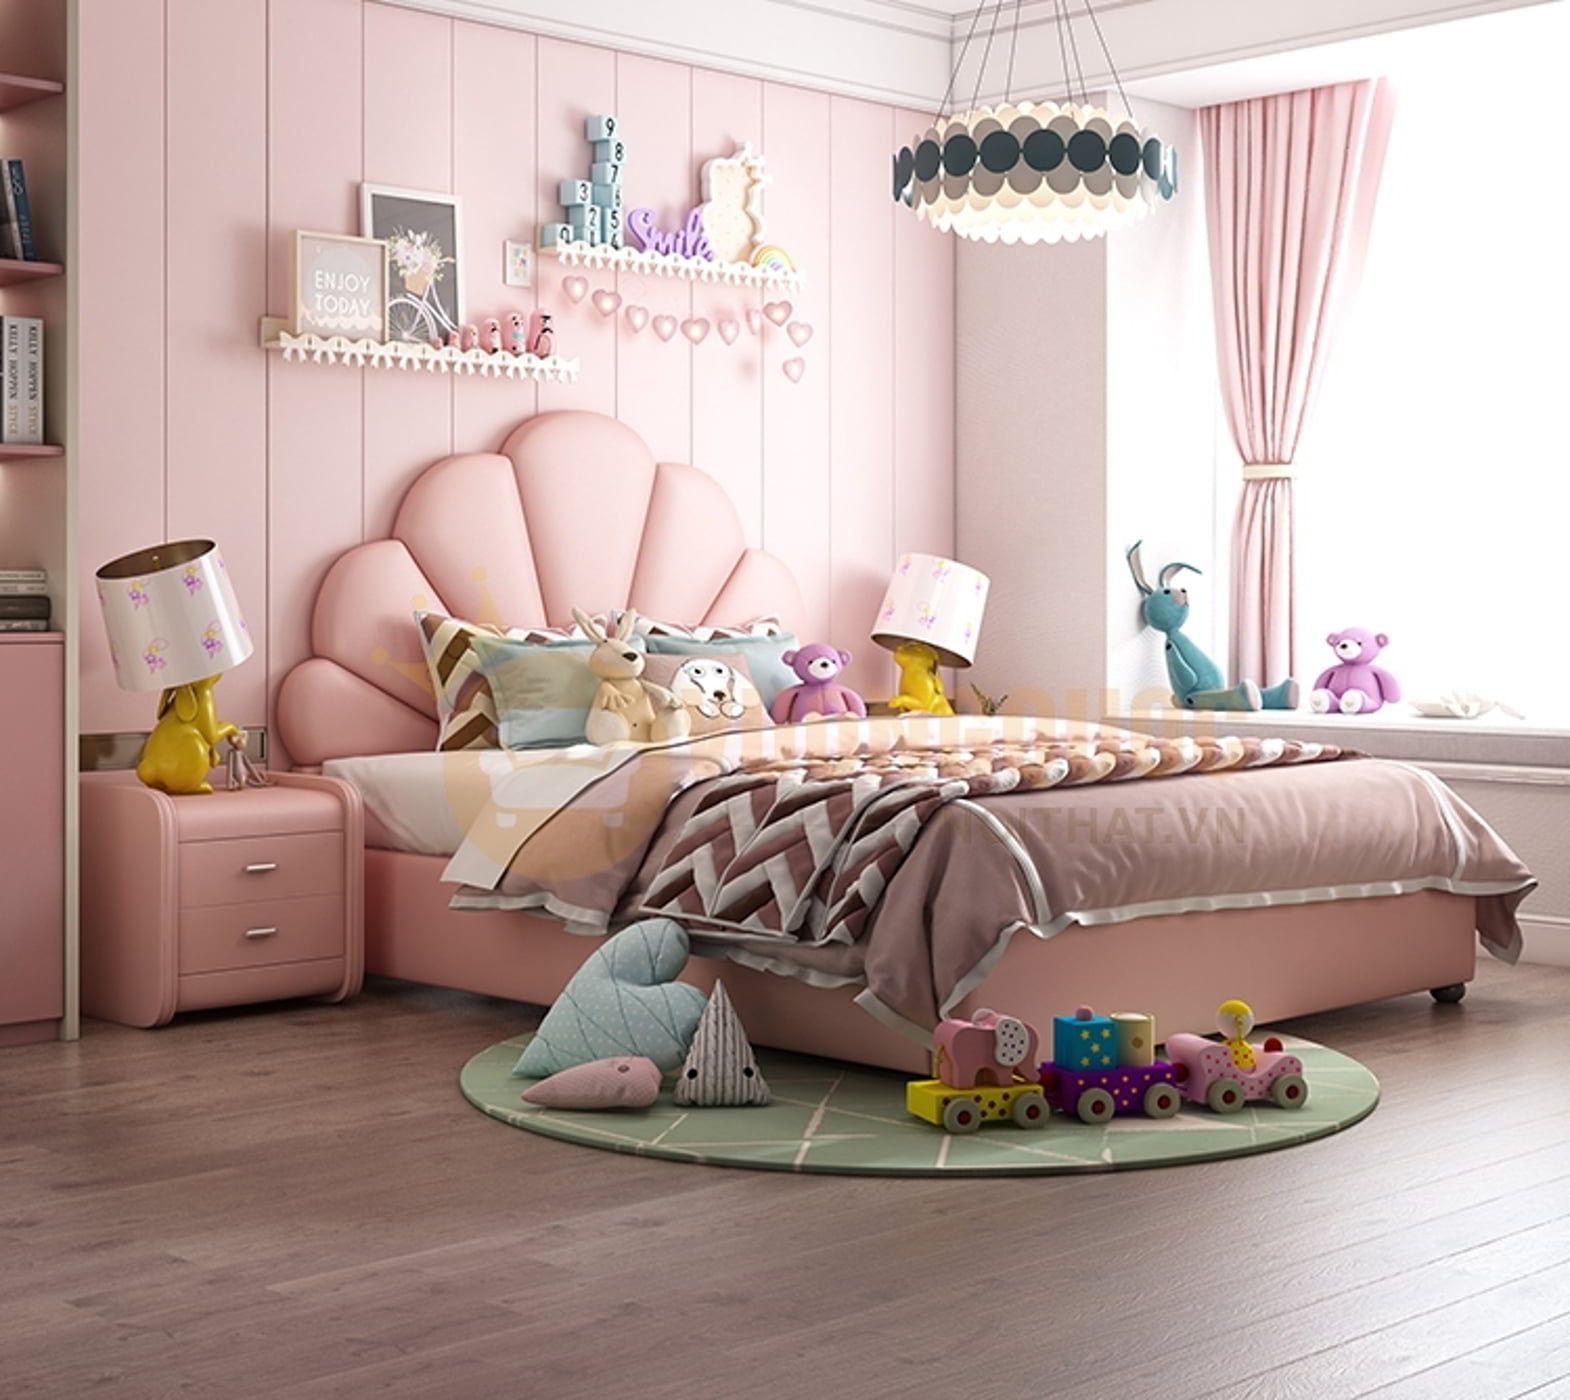 Phòng ngủ được bố trí rất nhiều món đồ giúp kích thích óc sáng tạo của các bé